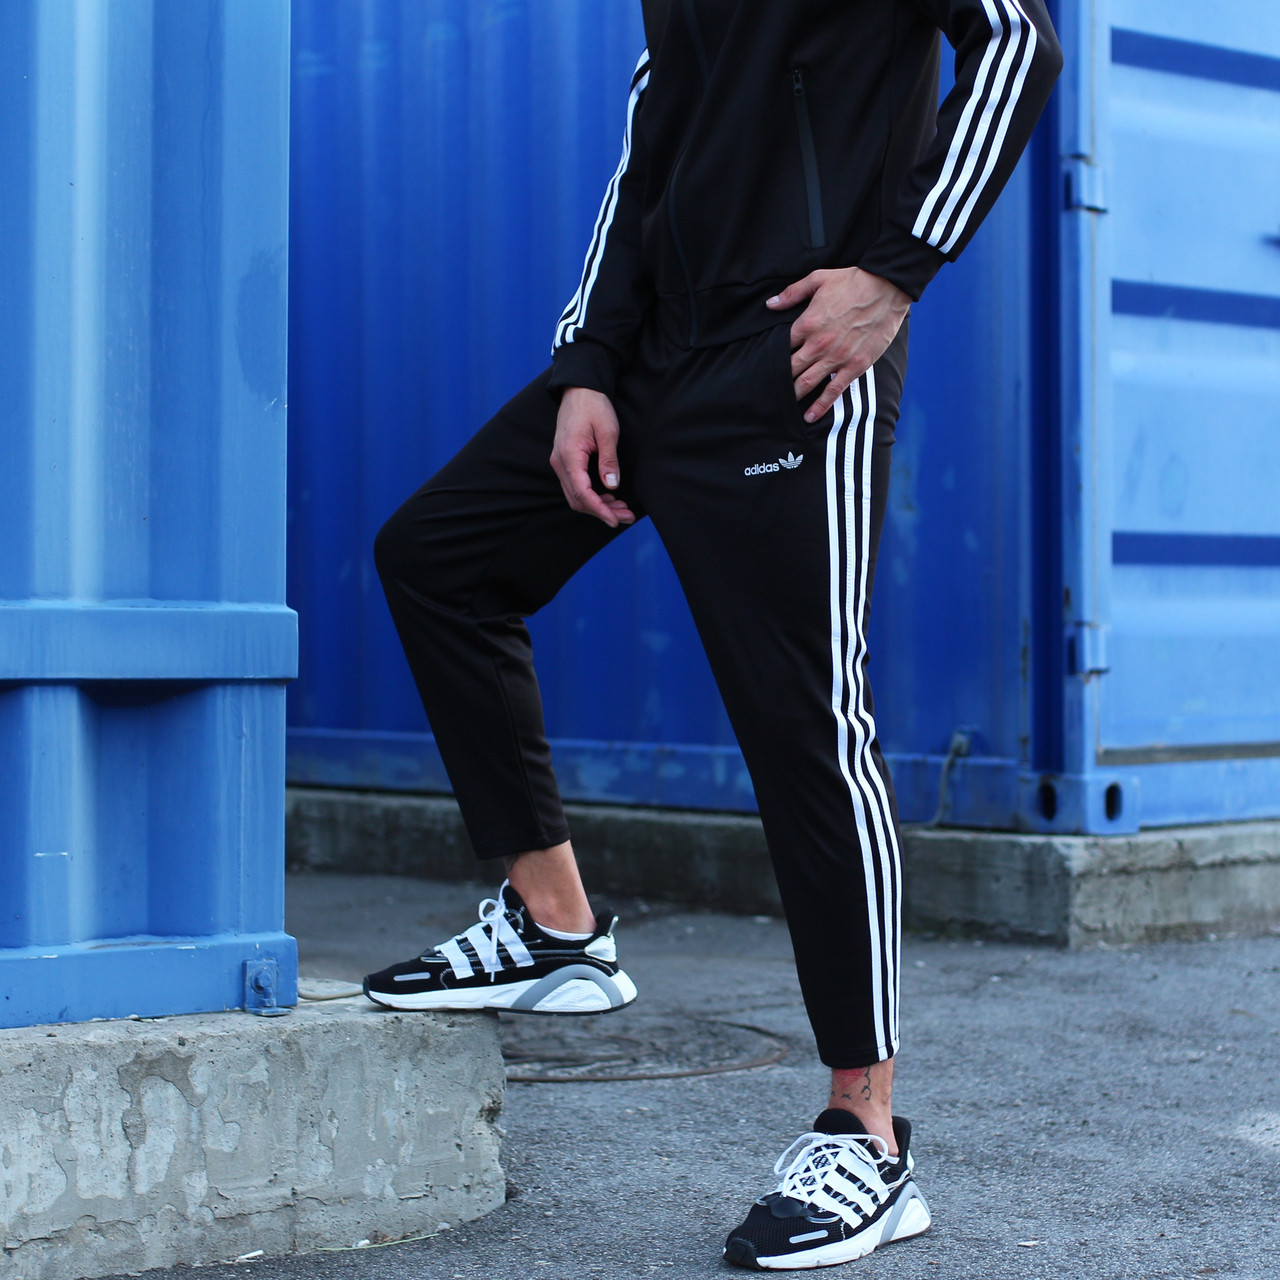 Спортивные штаны Adidas мужские укороченные осенние | весенние черные : 499  грн. - Спортивні штани Київ на BESPLATKA.ua 88232234